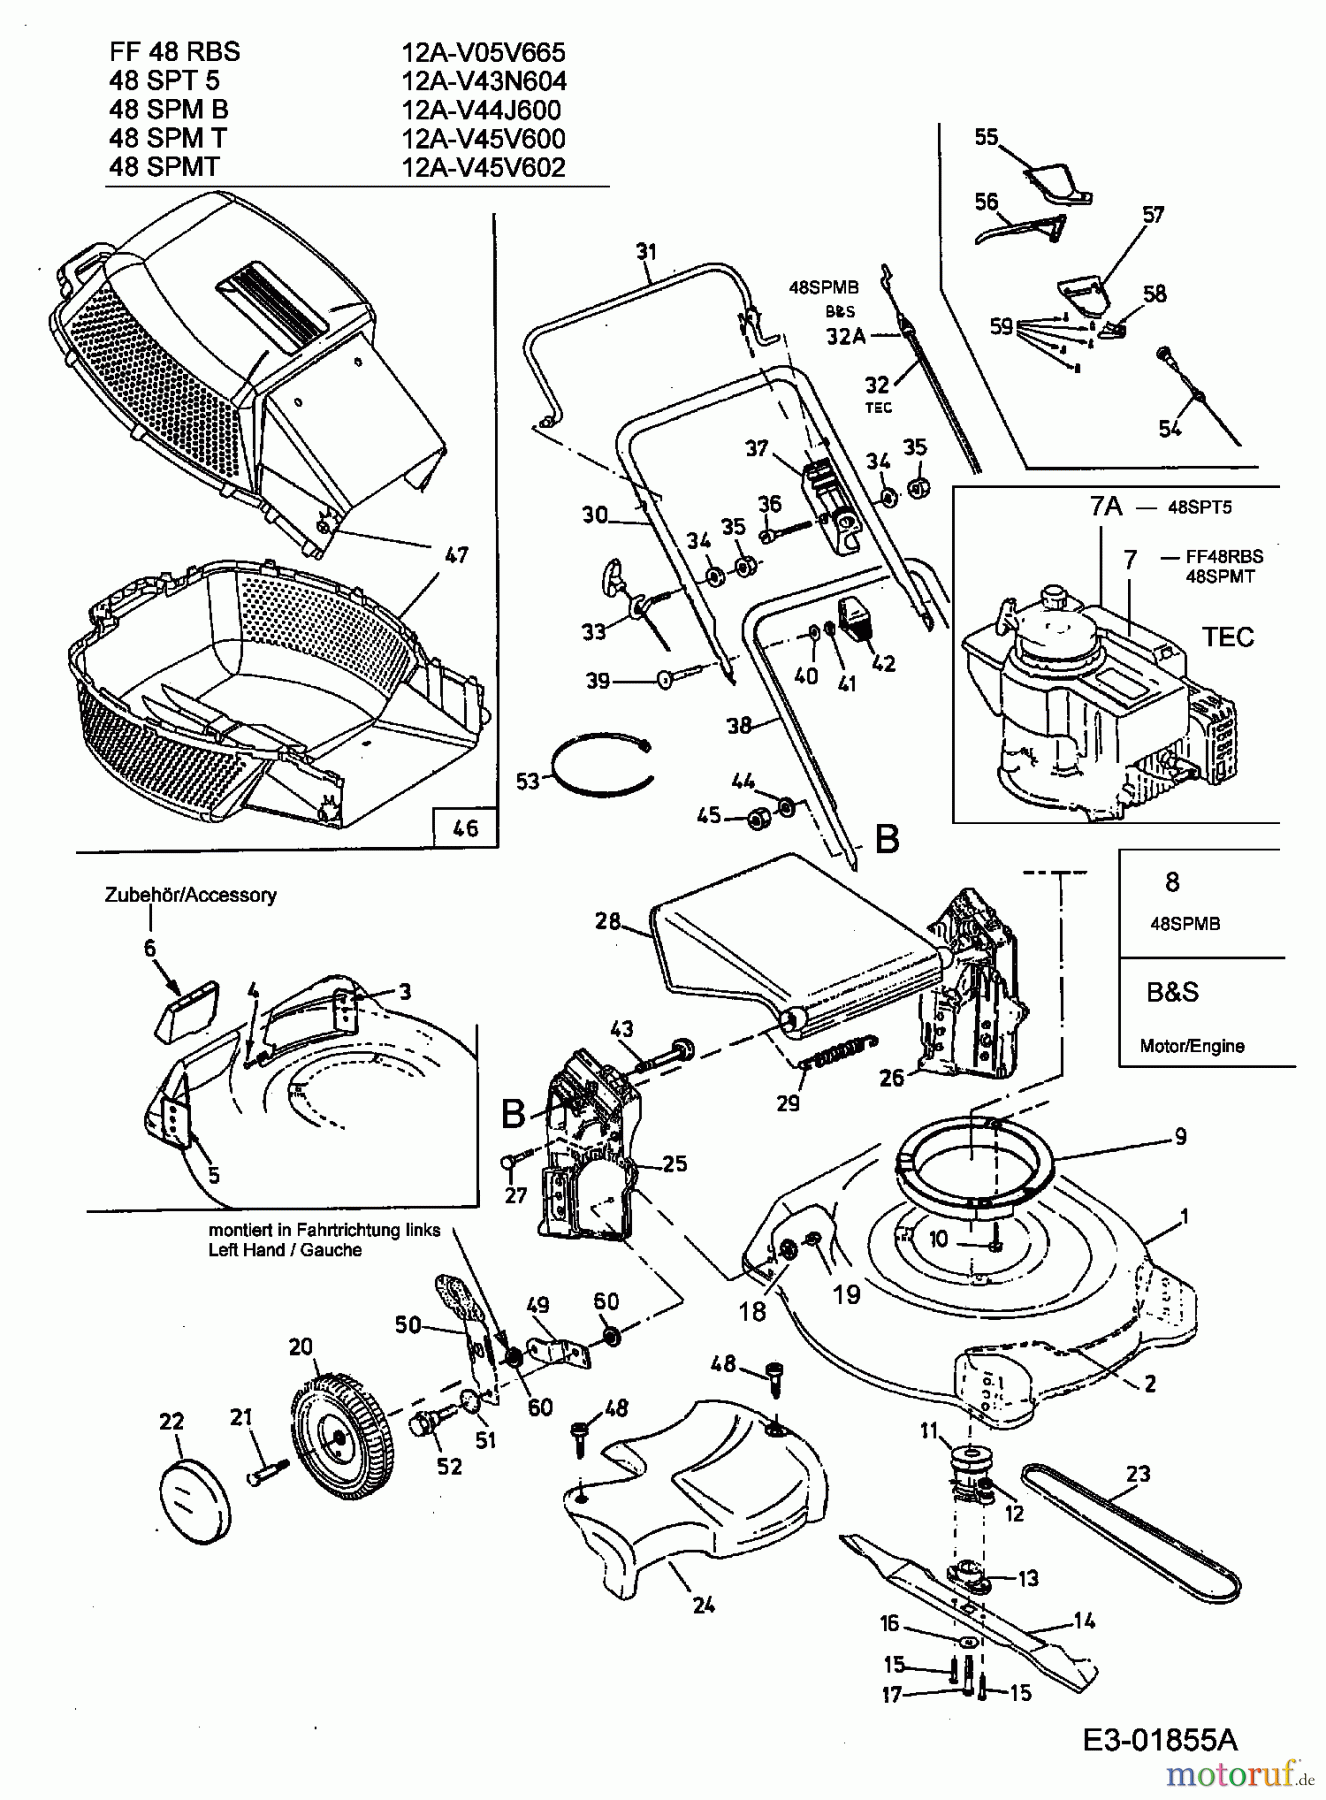  MTD Motormäher mit Antrieb 48 SPMT 12A-V45V600  (2003) Grundgerät